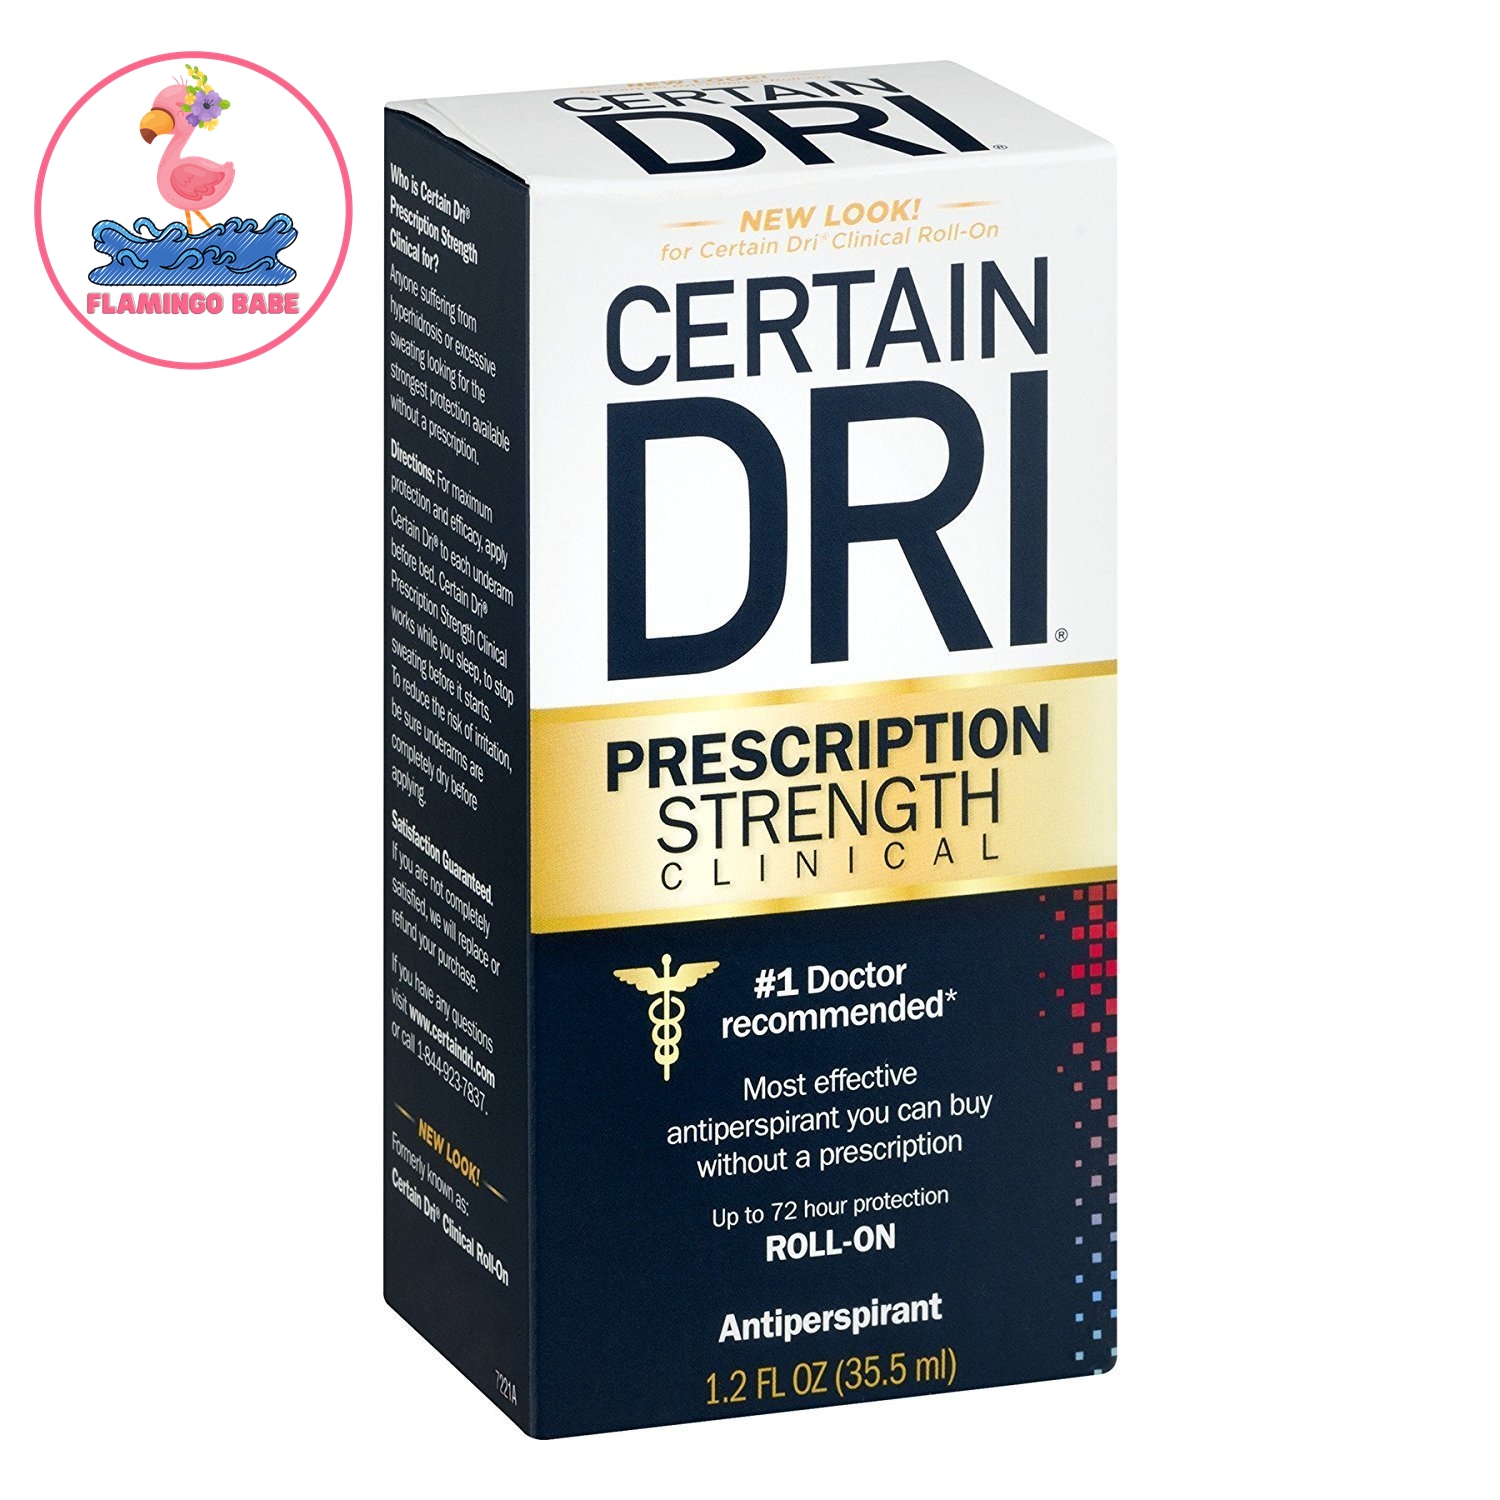 โปรโมชั่น Certain Dri P.M. Prescription Strength Clinical ระงับเหงื่อและกลิ่นกาย สูตรทากลางคืน แบบน้ำ-โรลออน ( roll-on )35.5 mL